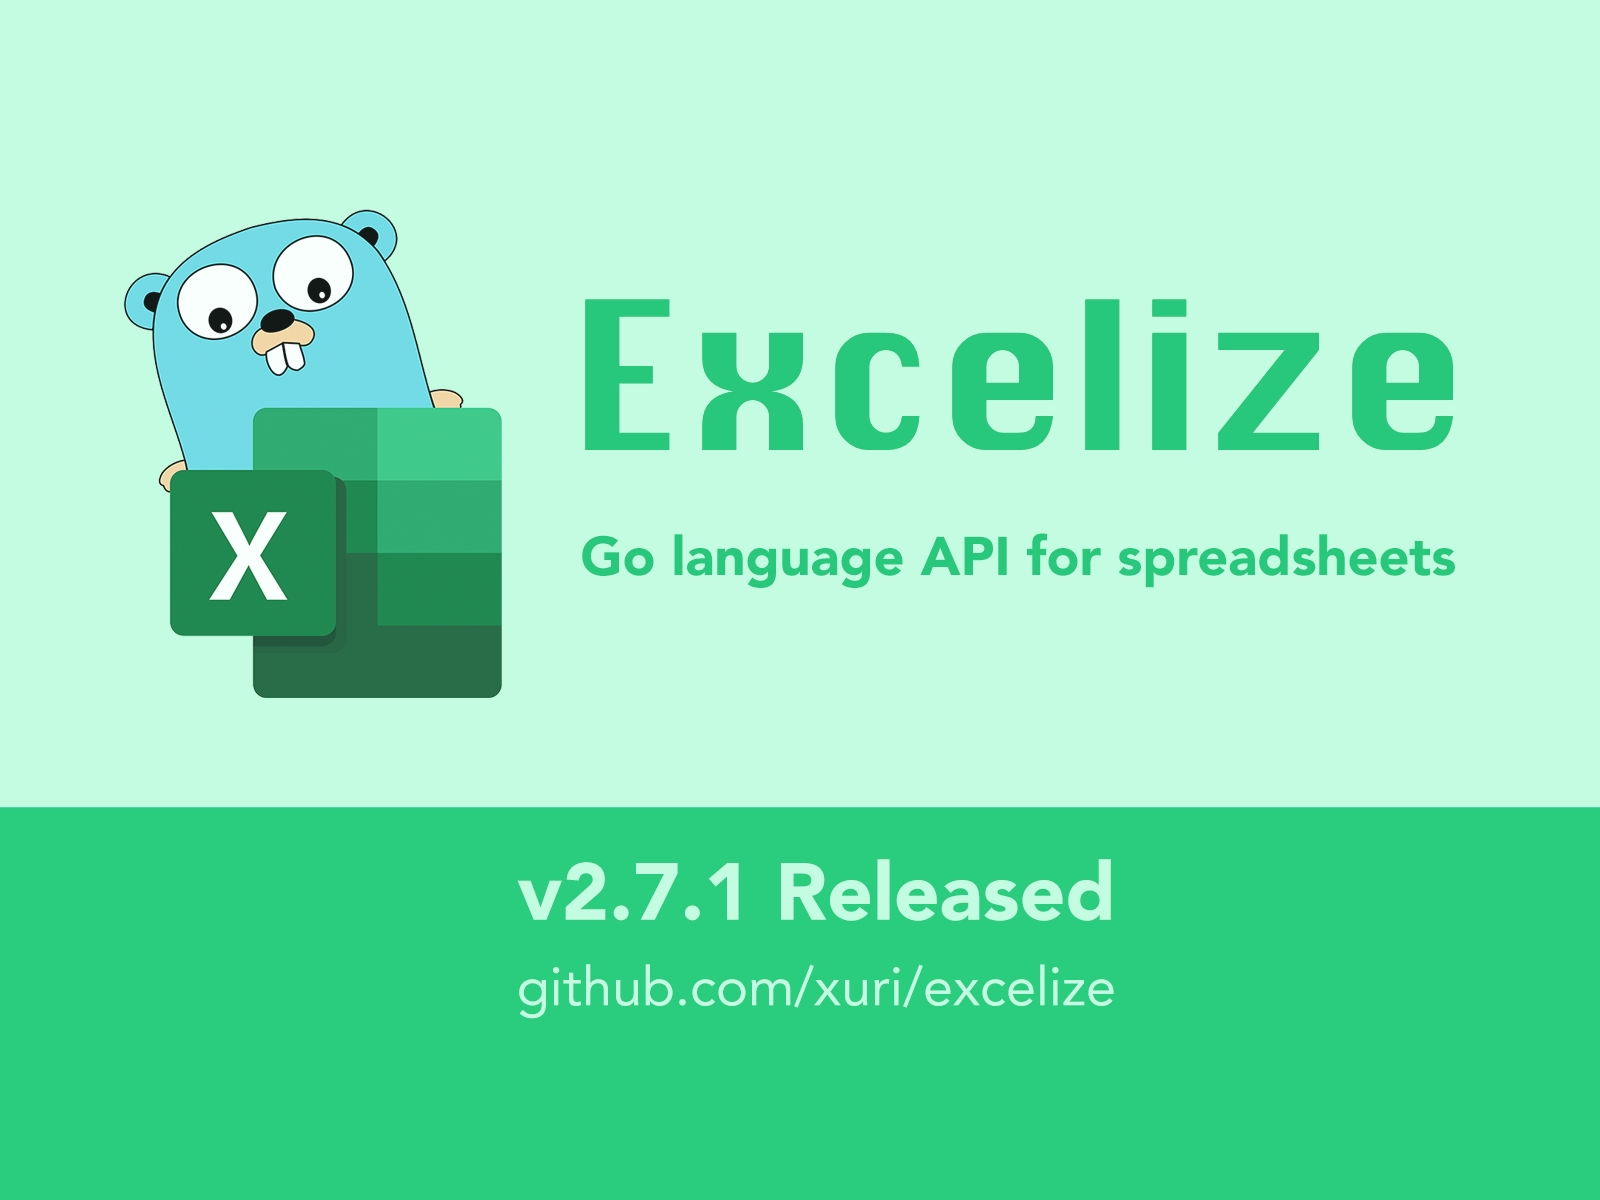 Go 言語スプレッドシートライブラリ：Excelize 2.7.1 がリリースされました